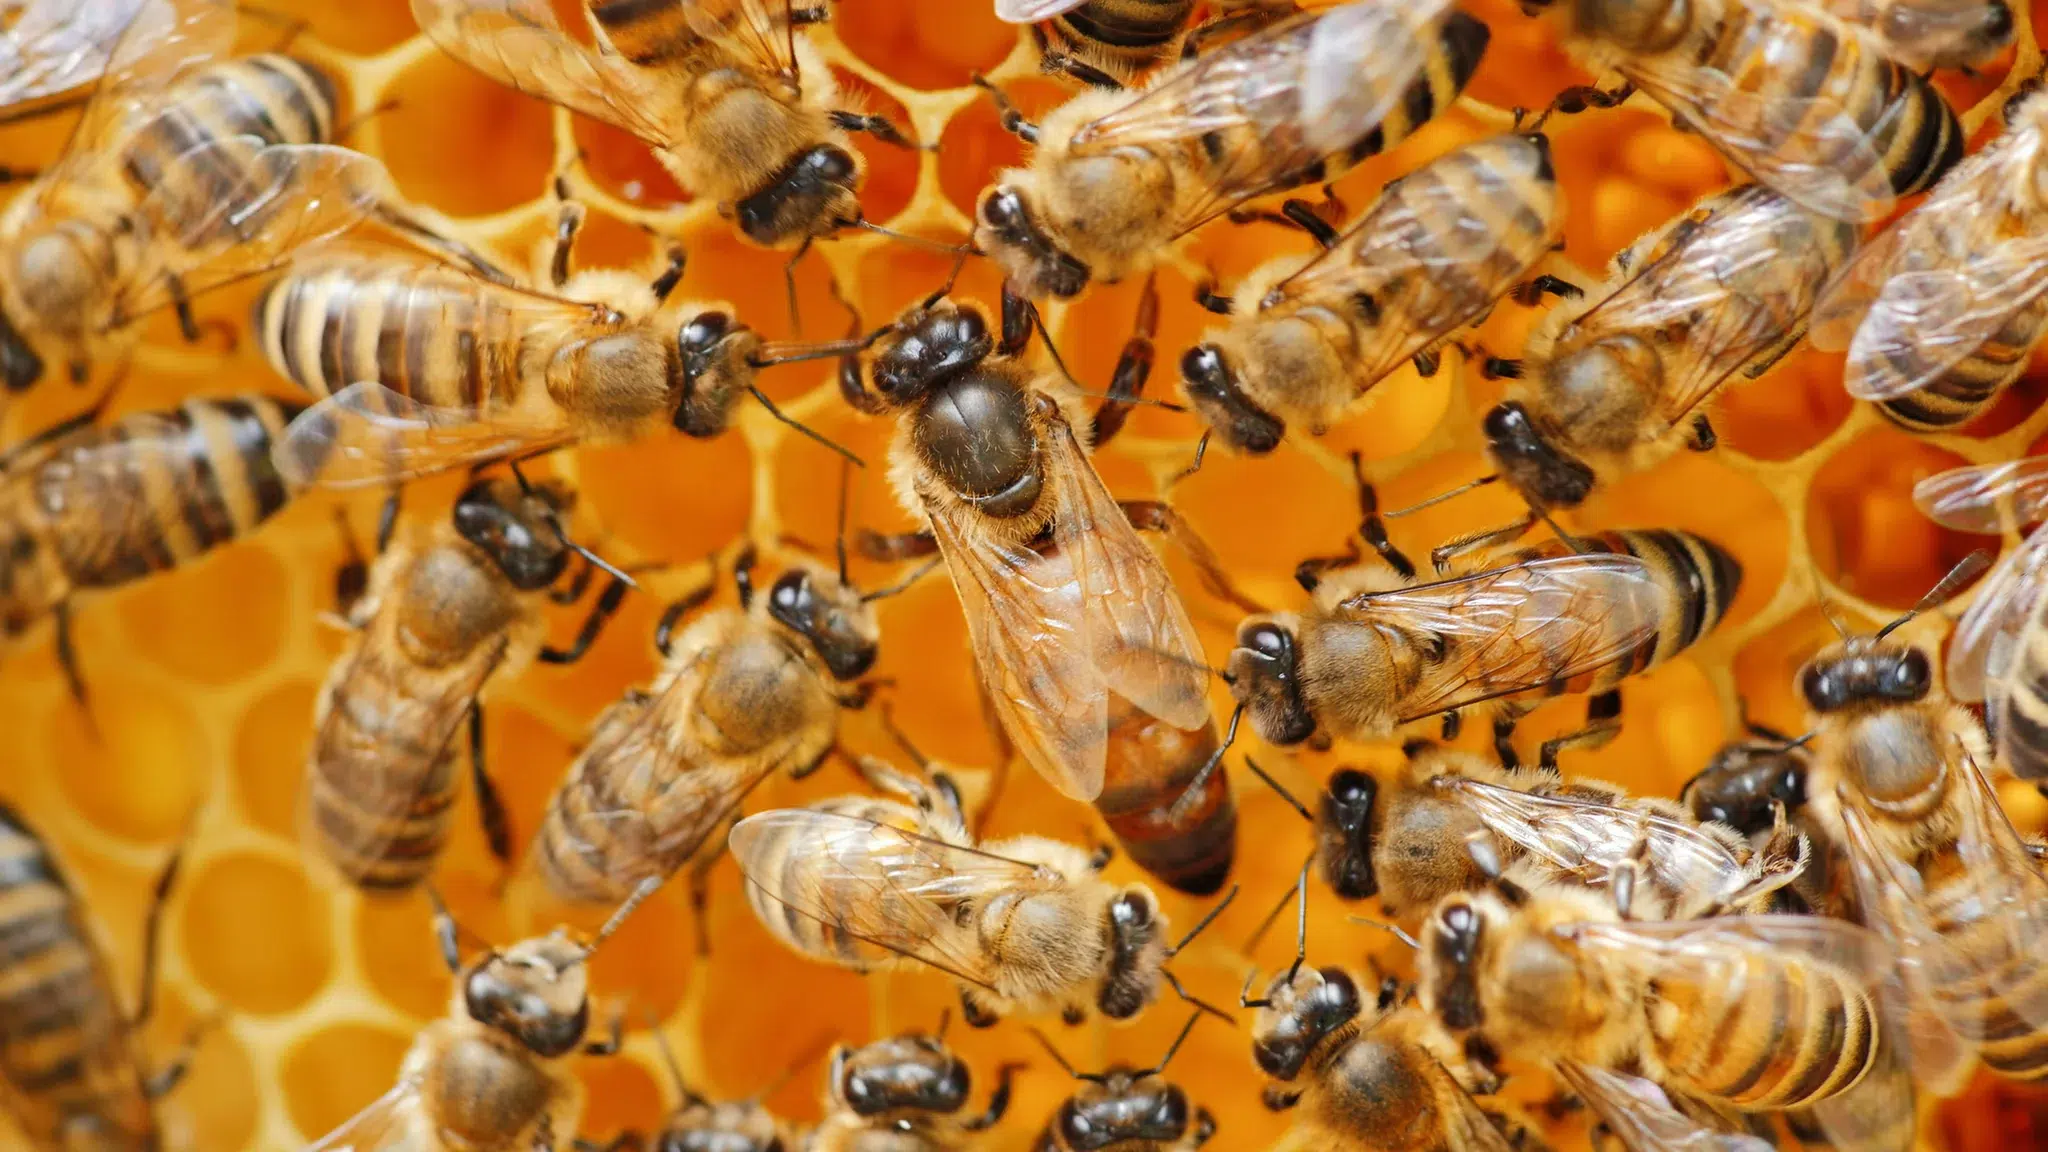 ملكة النحل الإيطالية (Italian Honey Bee Queen)